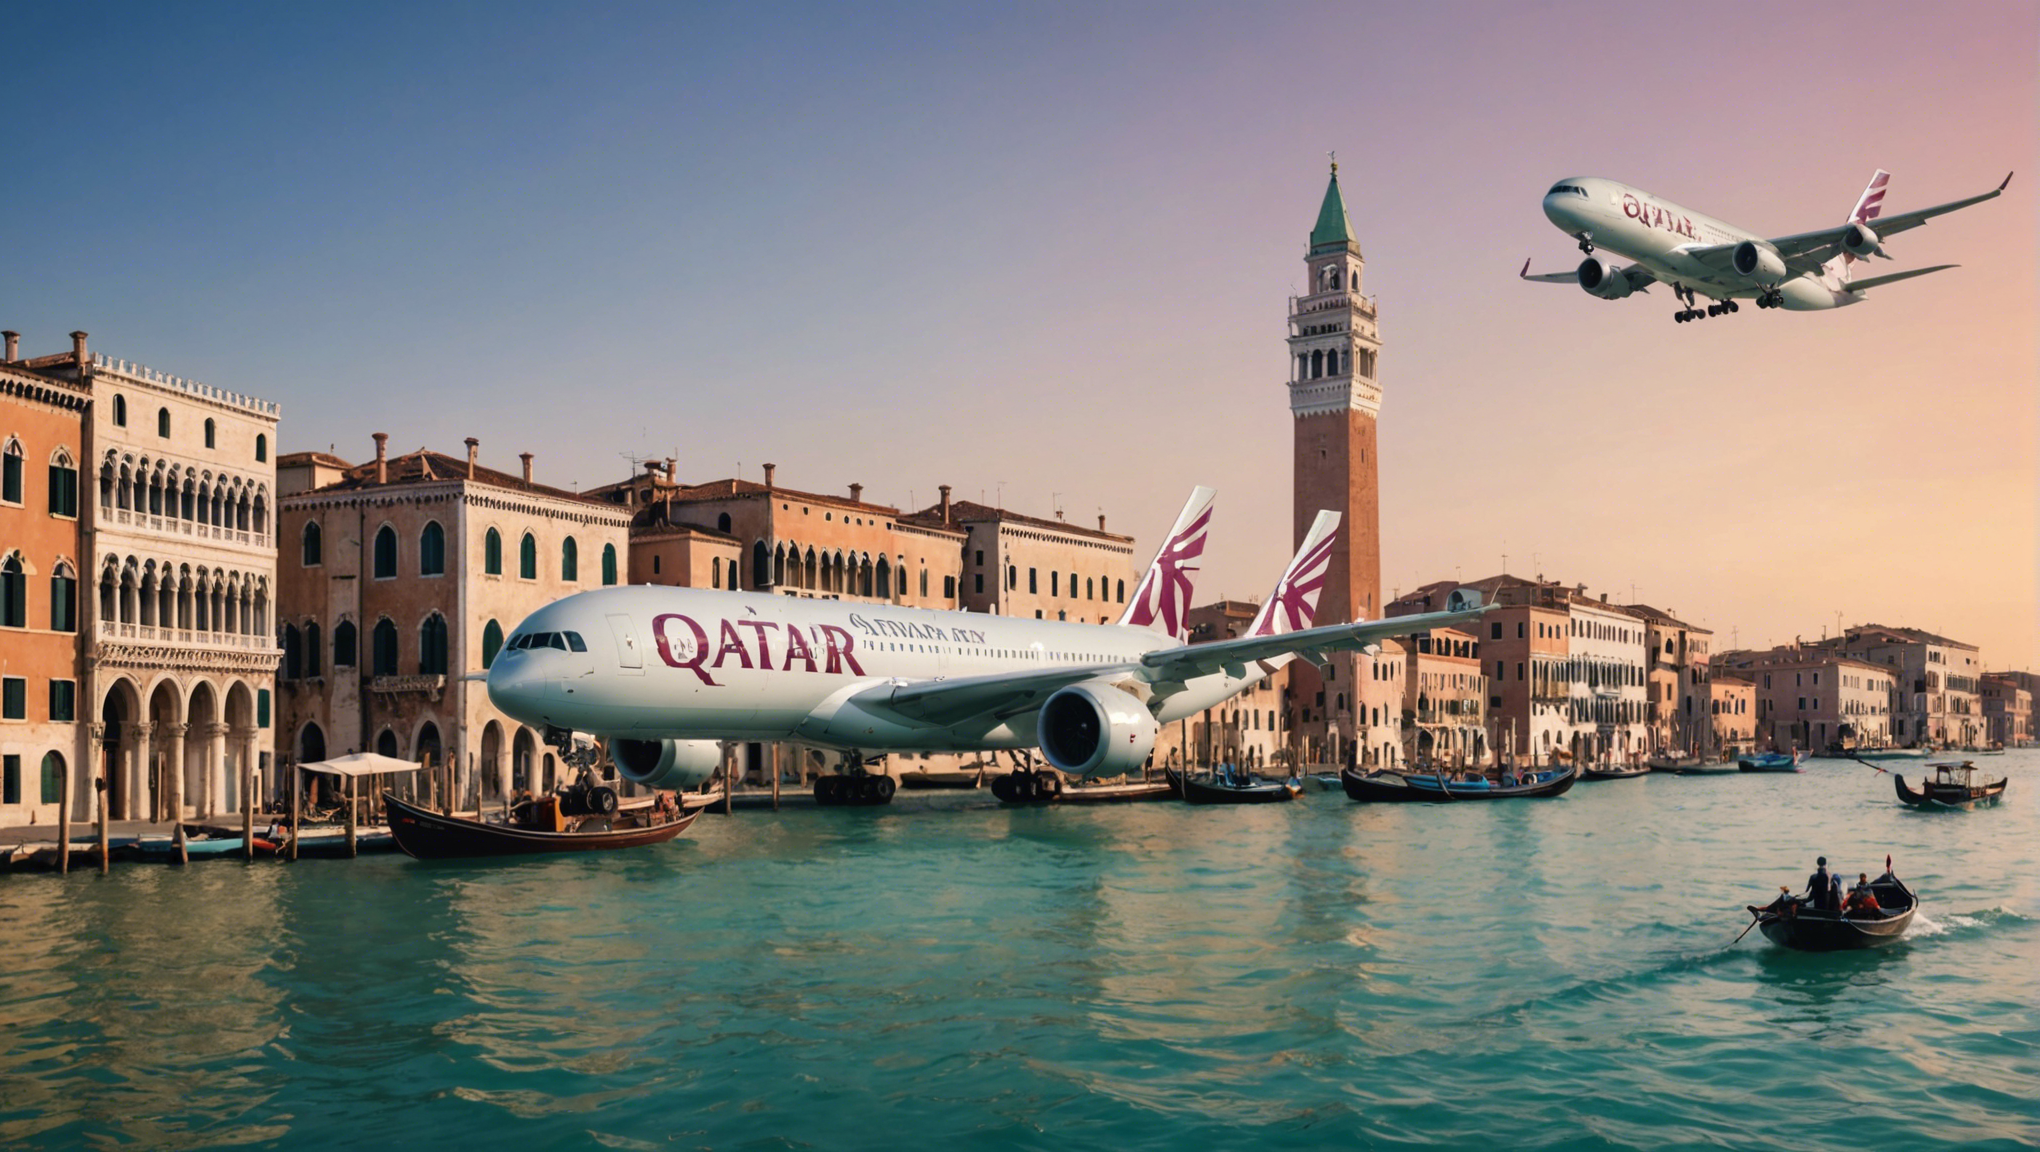 découvrez les vols vers venise avec qatar airways, une gamme complète de services pour un voyage inoubliable.